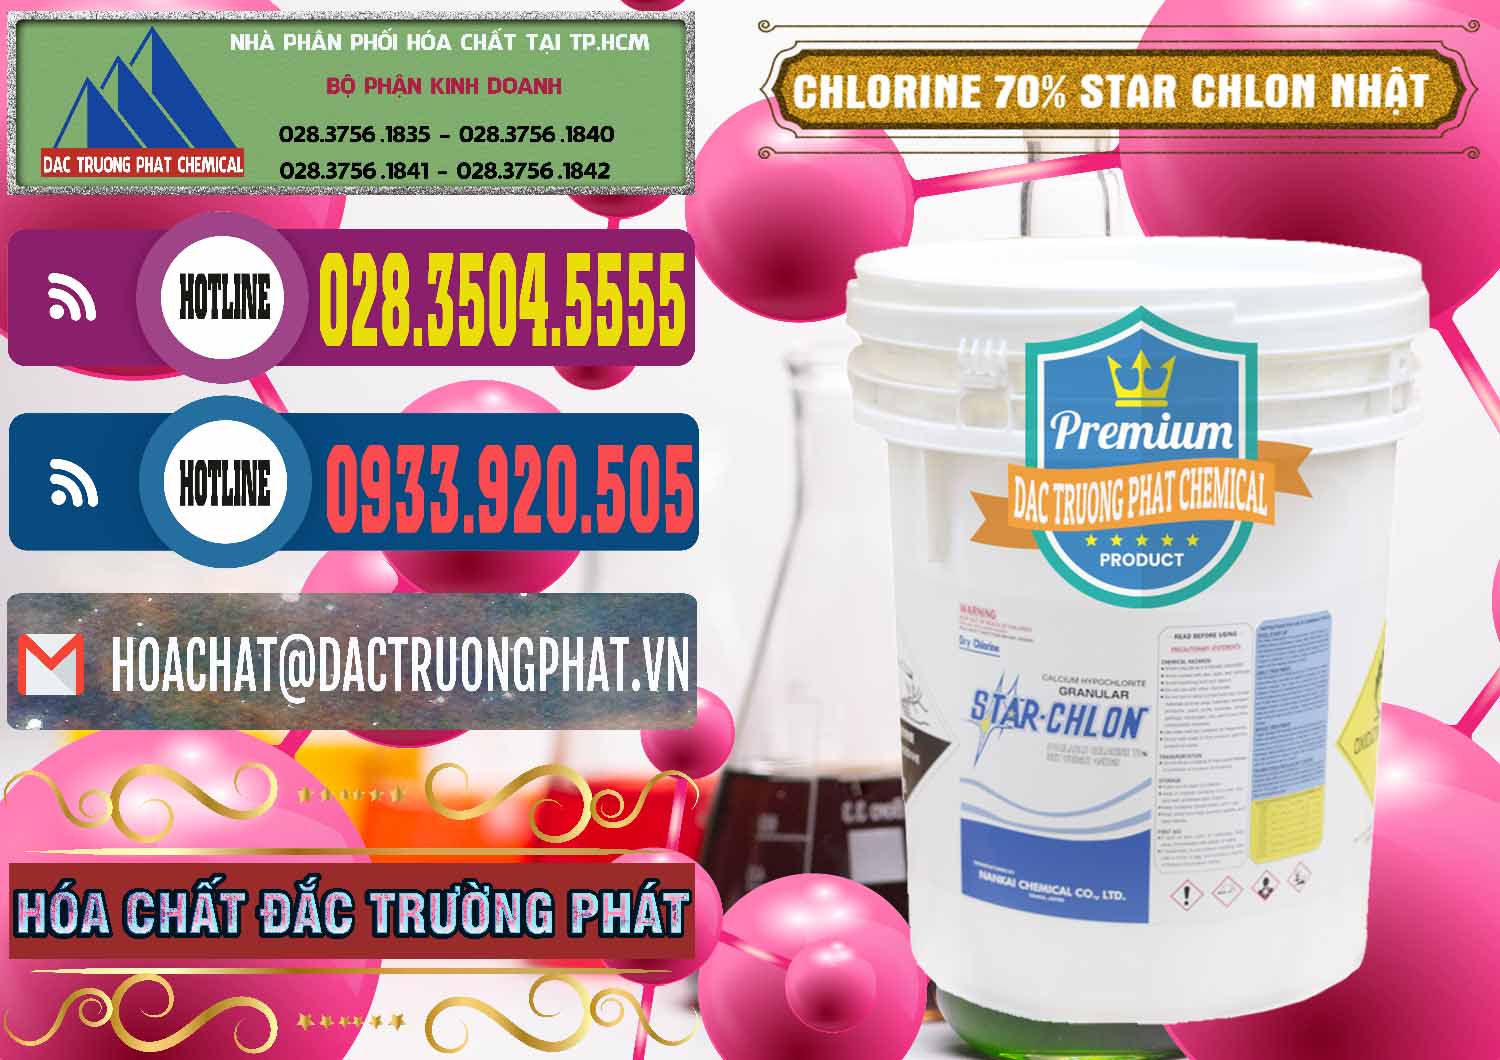 Cty chuyên bán ( phân phối ) Clorin – Chlorine 70% Star Chlon Nhật Bản Japan - 0243 - Nơi chuyên kinh doanh và cung cấp hóa chất tại TP.HCM - muabanhoachat.com.vn